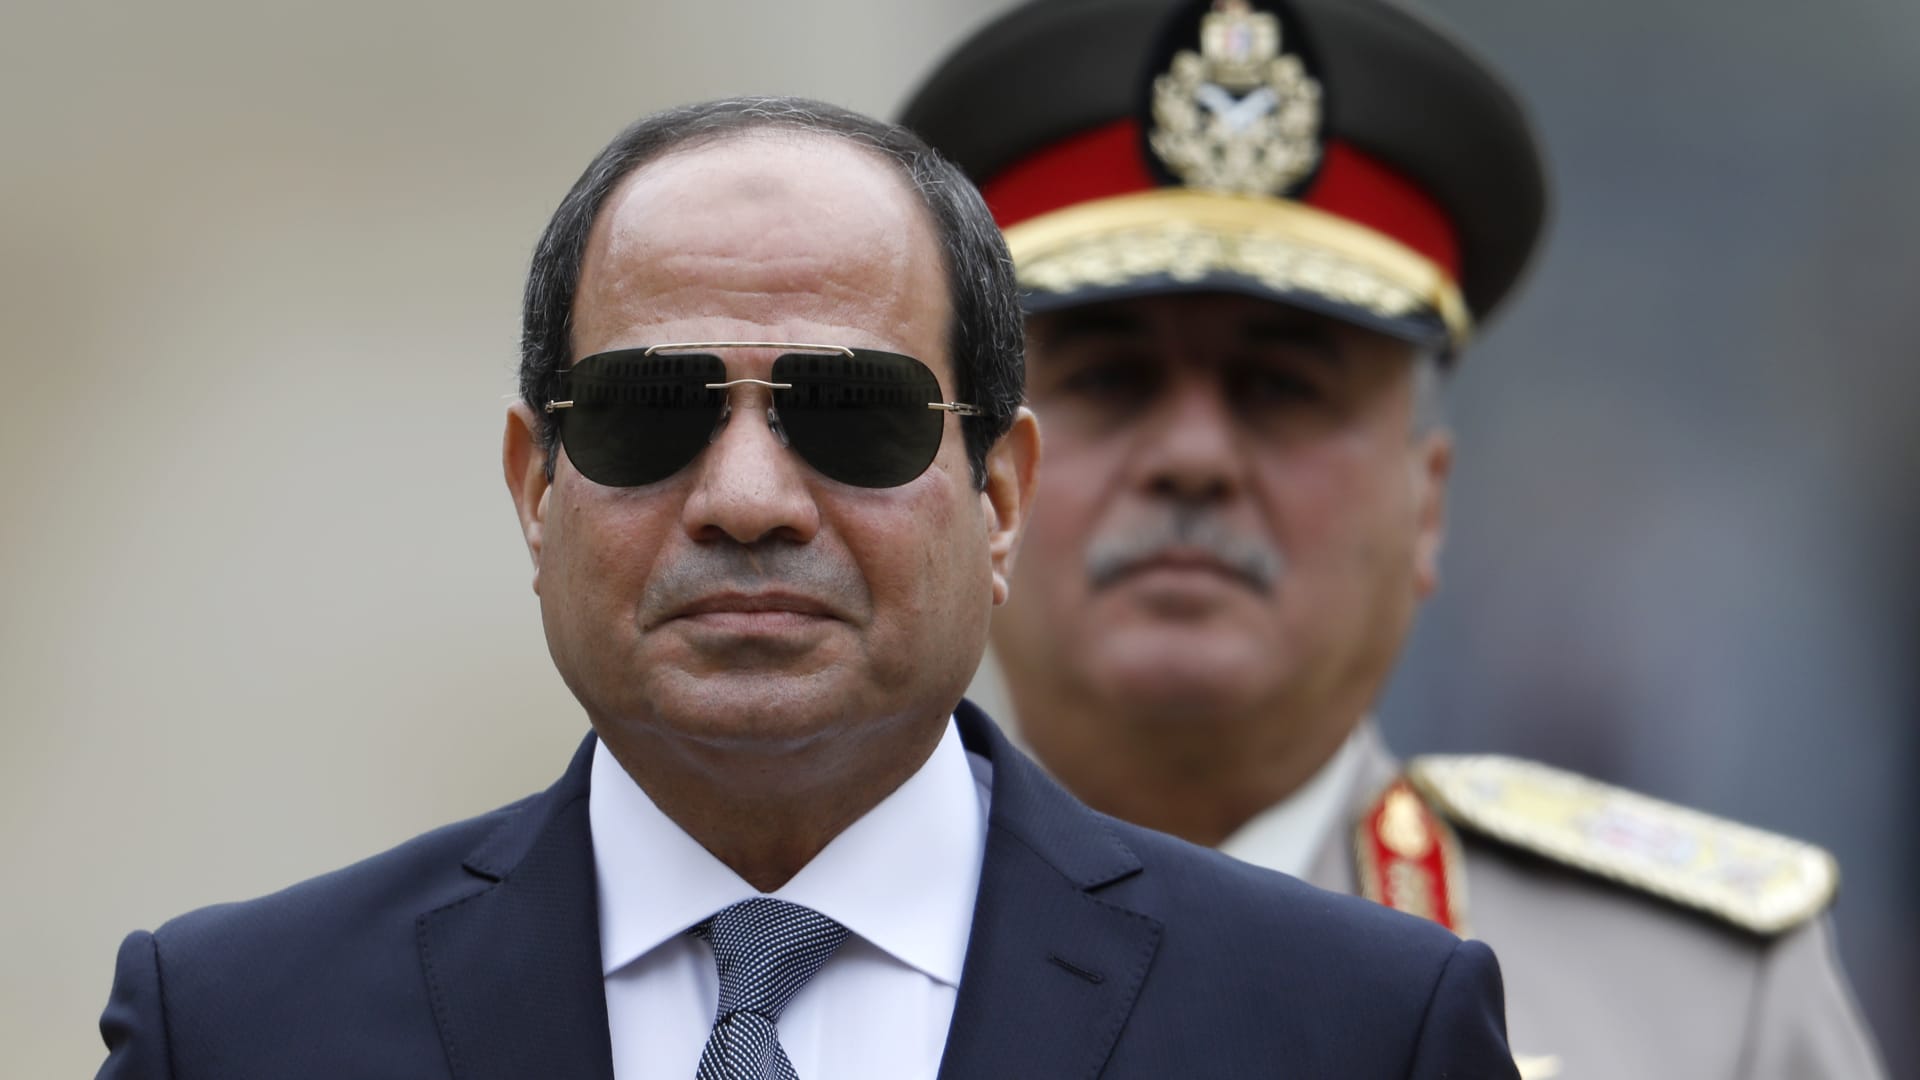 السيسي لـCNN: لا يوجد فرصة لأي ديكتاتوريات في مصر